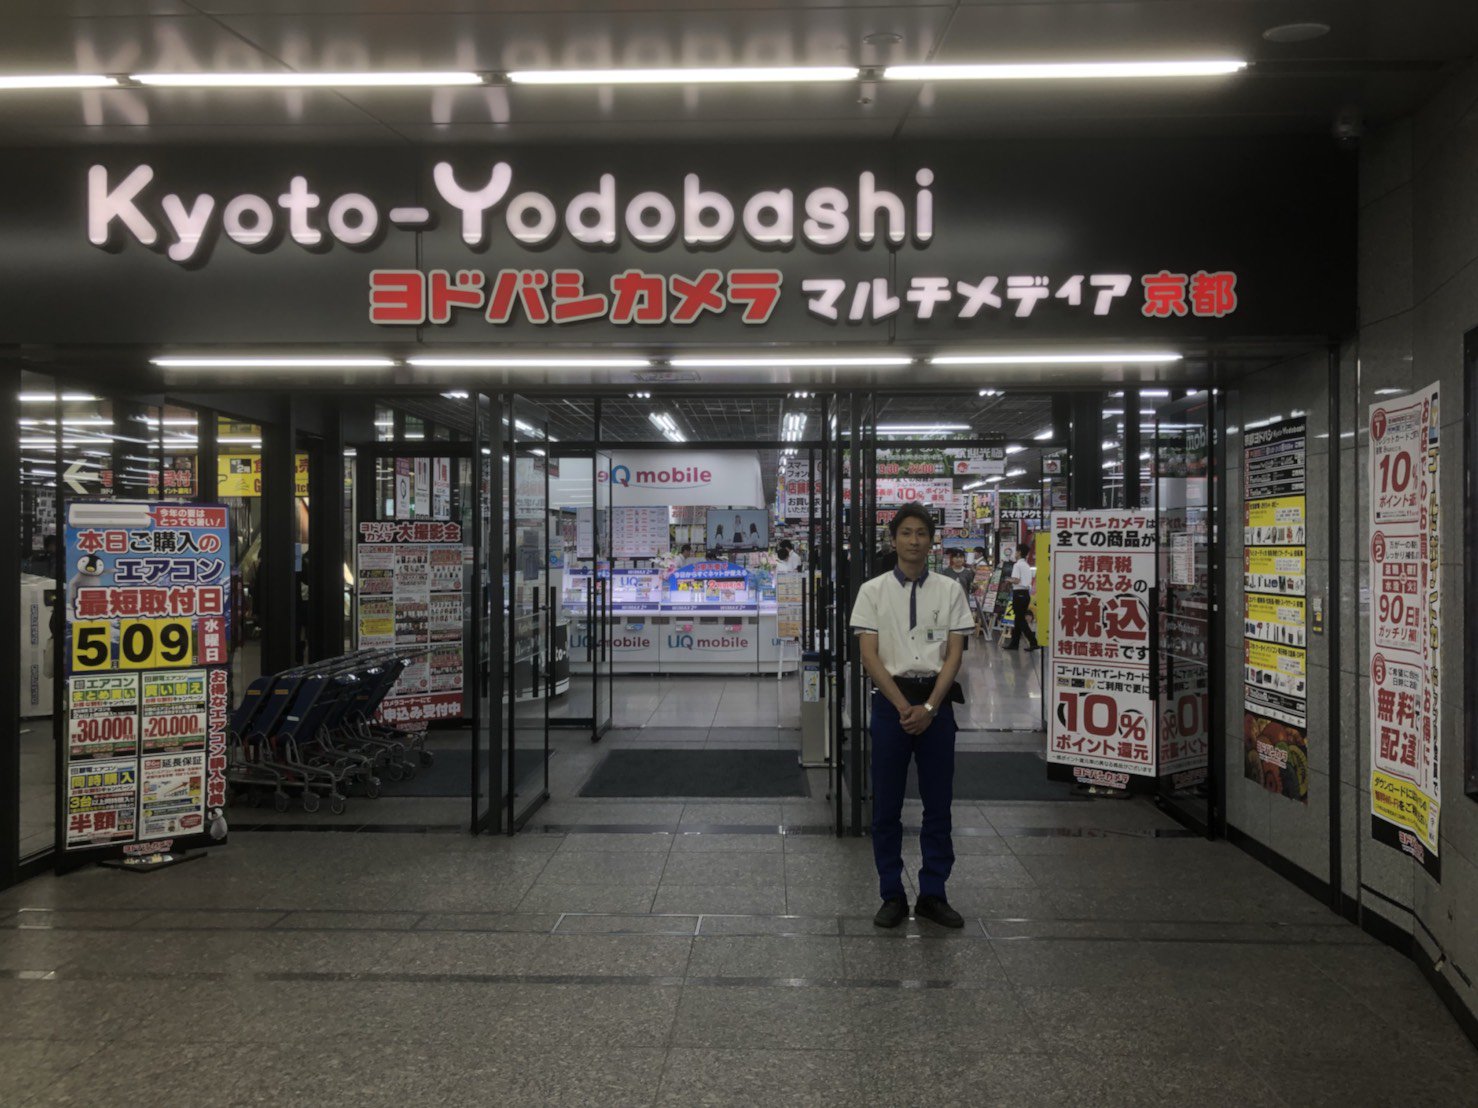 ヨドバシカメラ 京都店 あいにく雨が降ってきましたね 実は京都ヨドバシは京都駅から地下通路で濡れずに来られるんですよ ぜひ ご来店くださいませ ヨドバシ京都 京都駅 地下通路